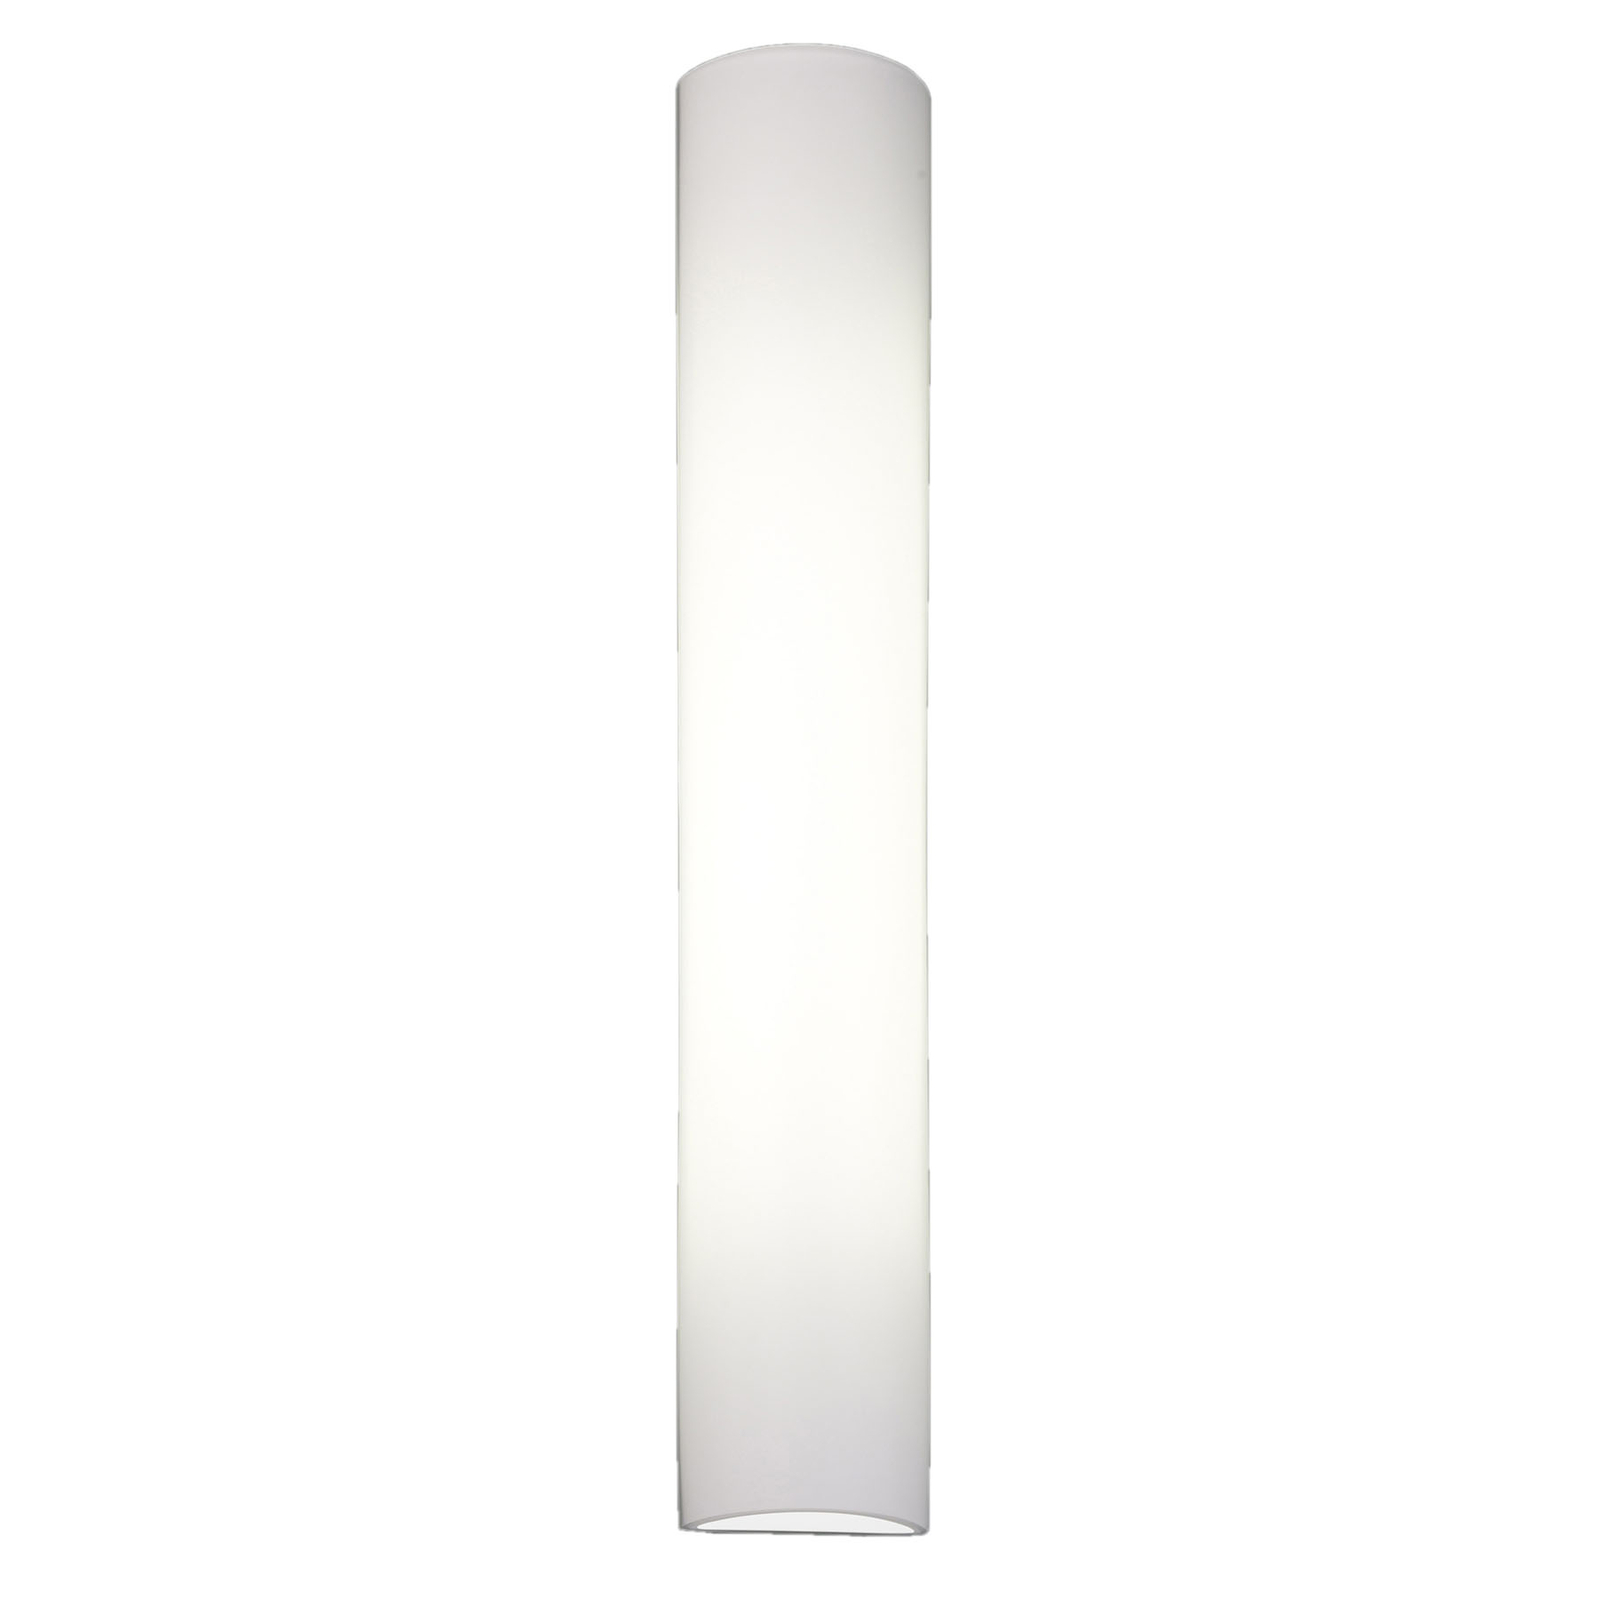 BANKAMP Cromo LED nástěnné světlo ze skla, 54cm